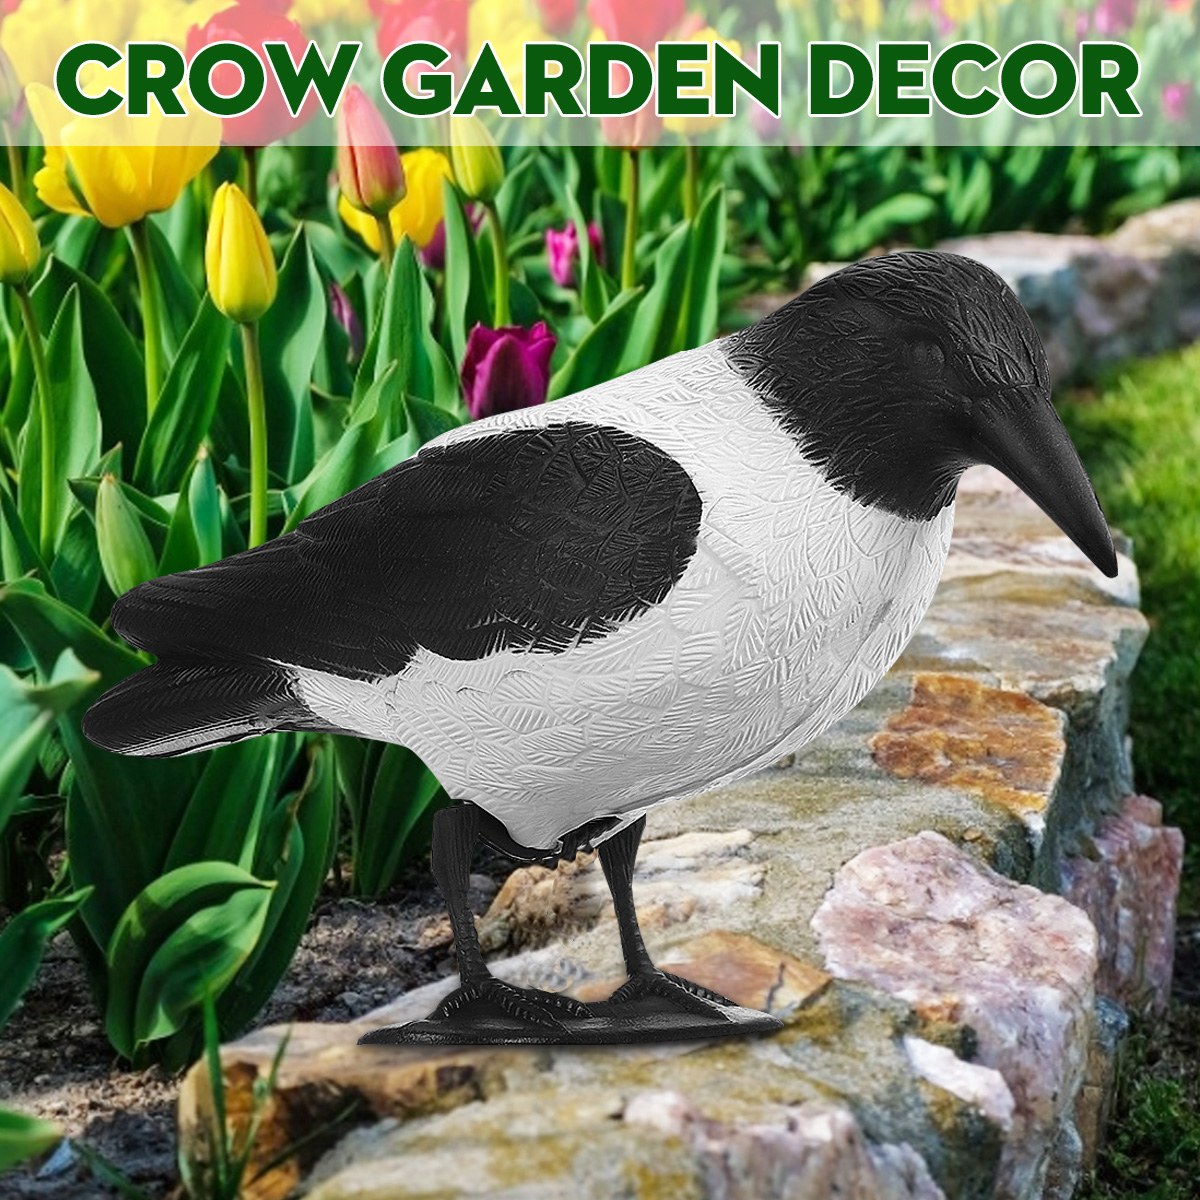 Crow-Hunting-Decoy-Bird-Deterrent-Scarer-Outdoor-Garden-Hunting-Equipment-1556629-2